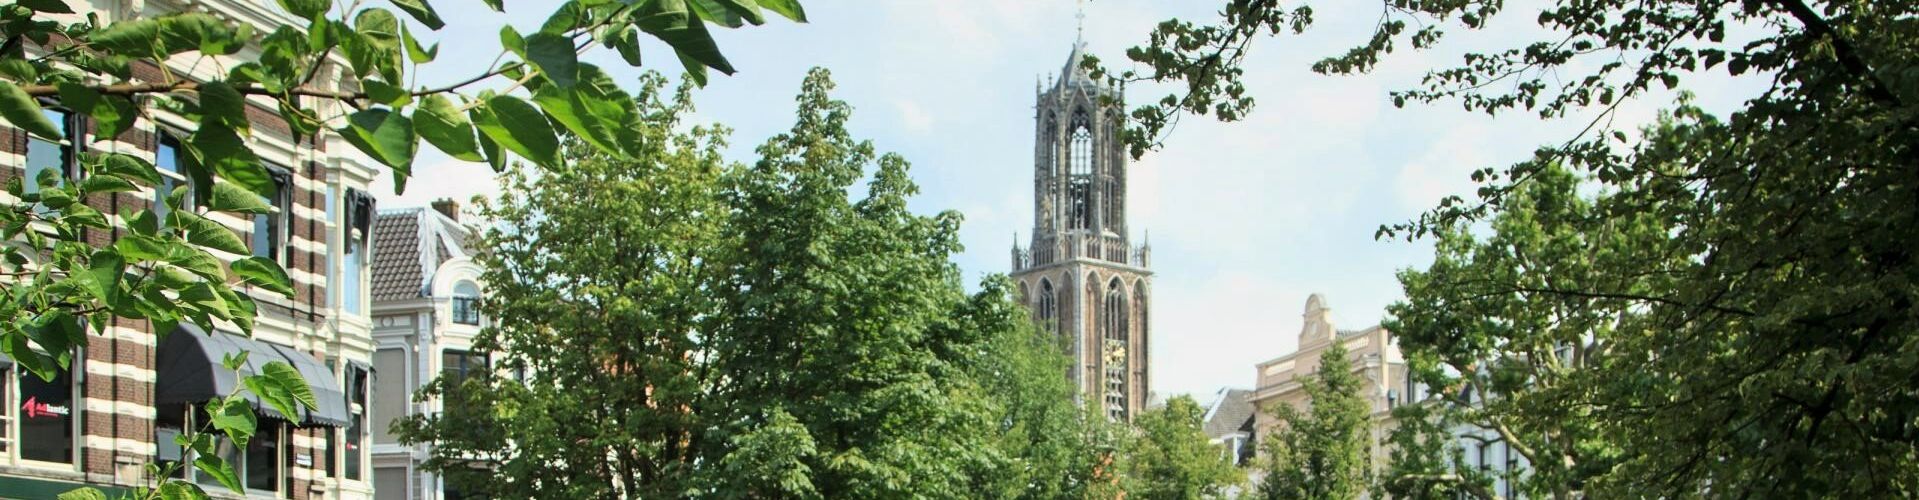 RTV Utrecht in gesprek met Roel Vermeulen over de gezonde stad